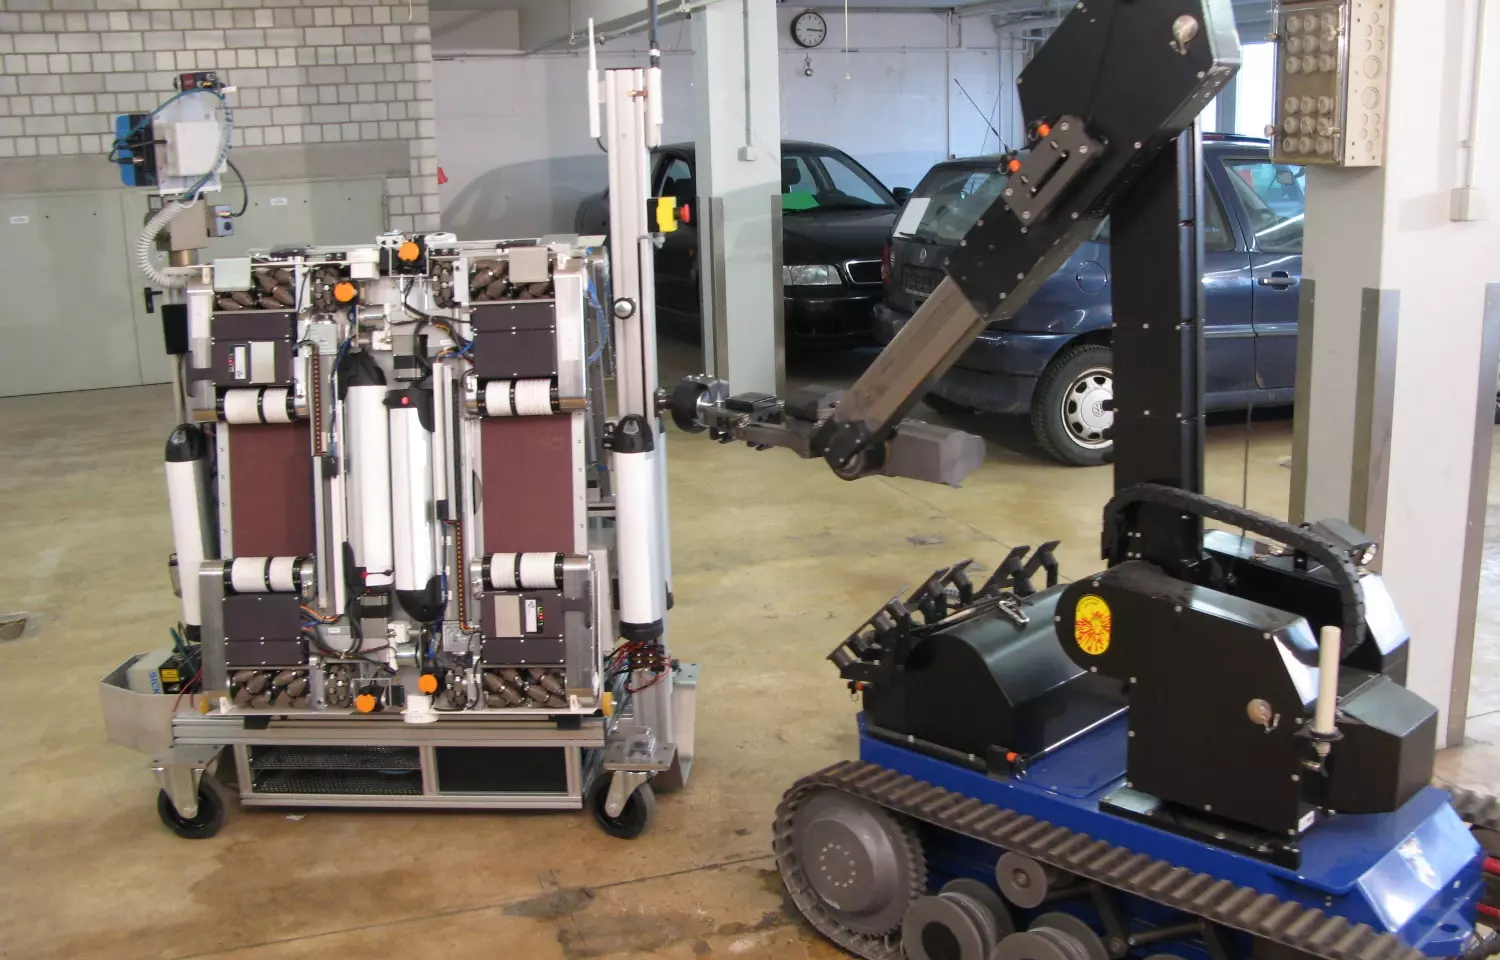 AVERT - Roboter bringt mehr Sicherheit für Bombenentschärfer